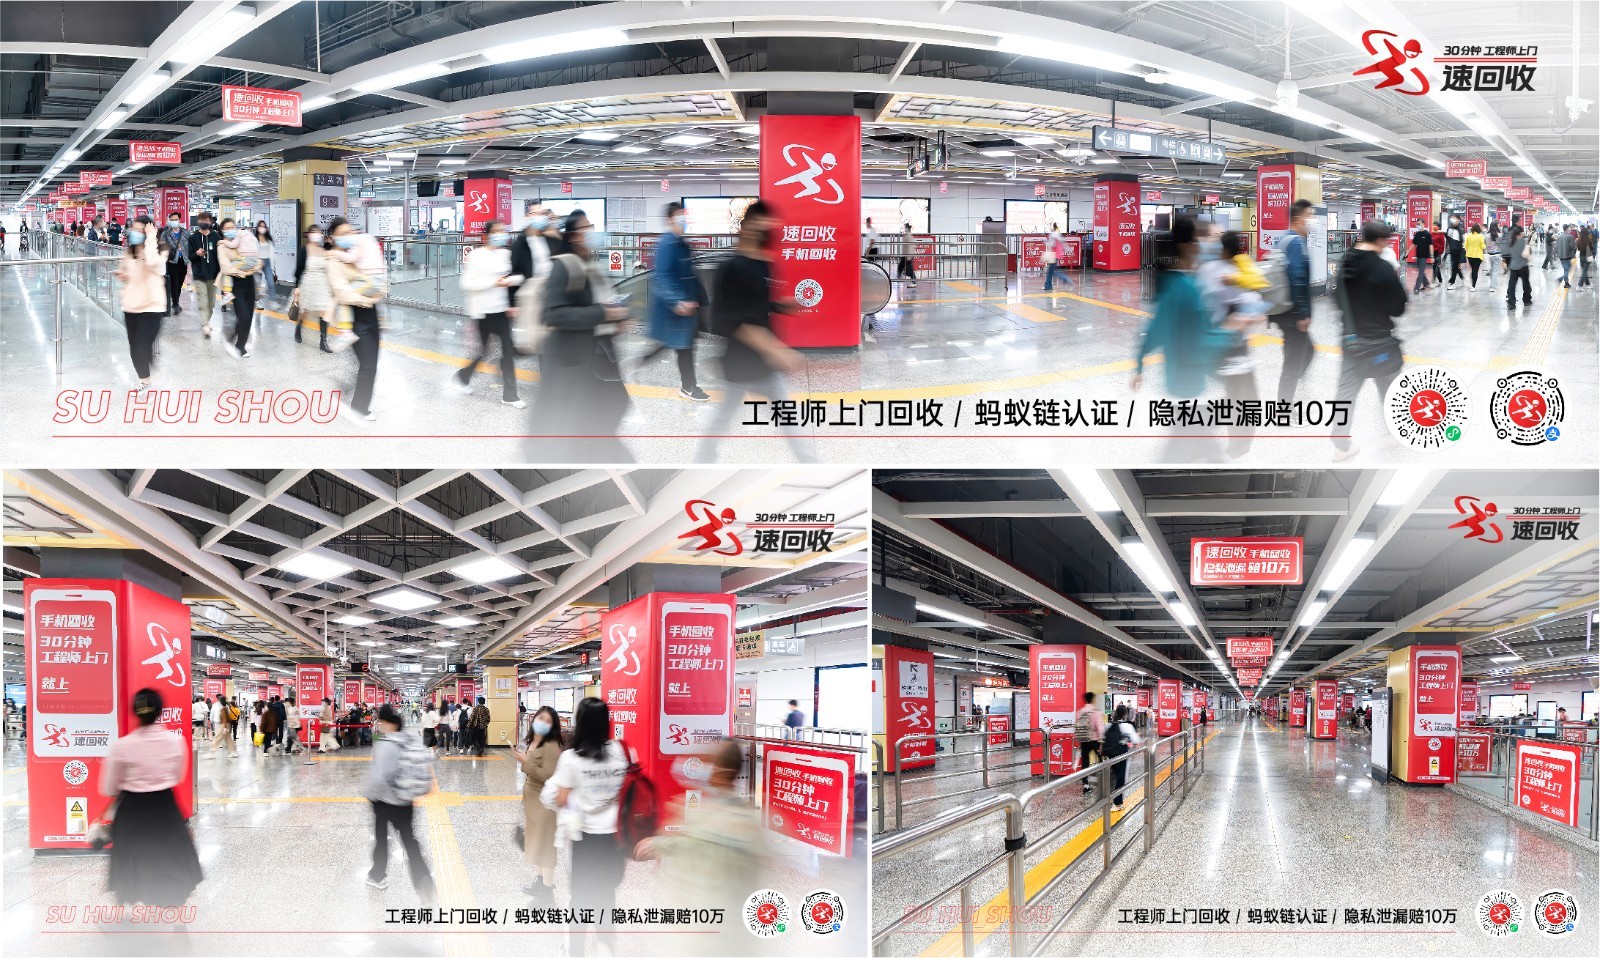 速回收X深圳报业 手机回收承包深圳地铁，全国两会热议循环经济